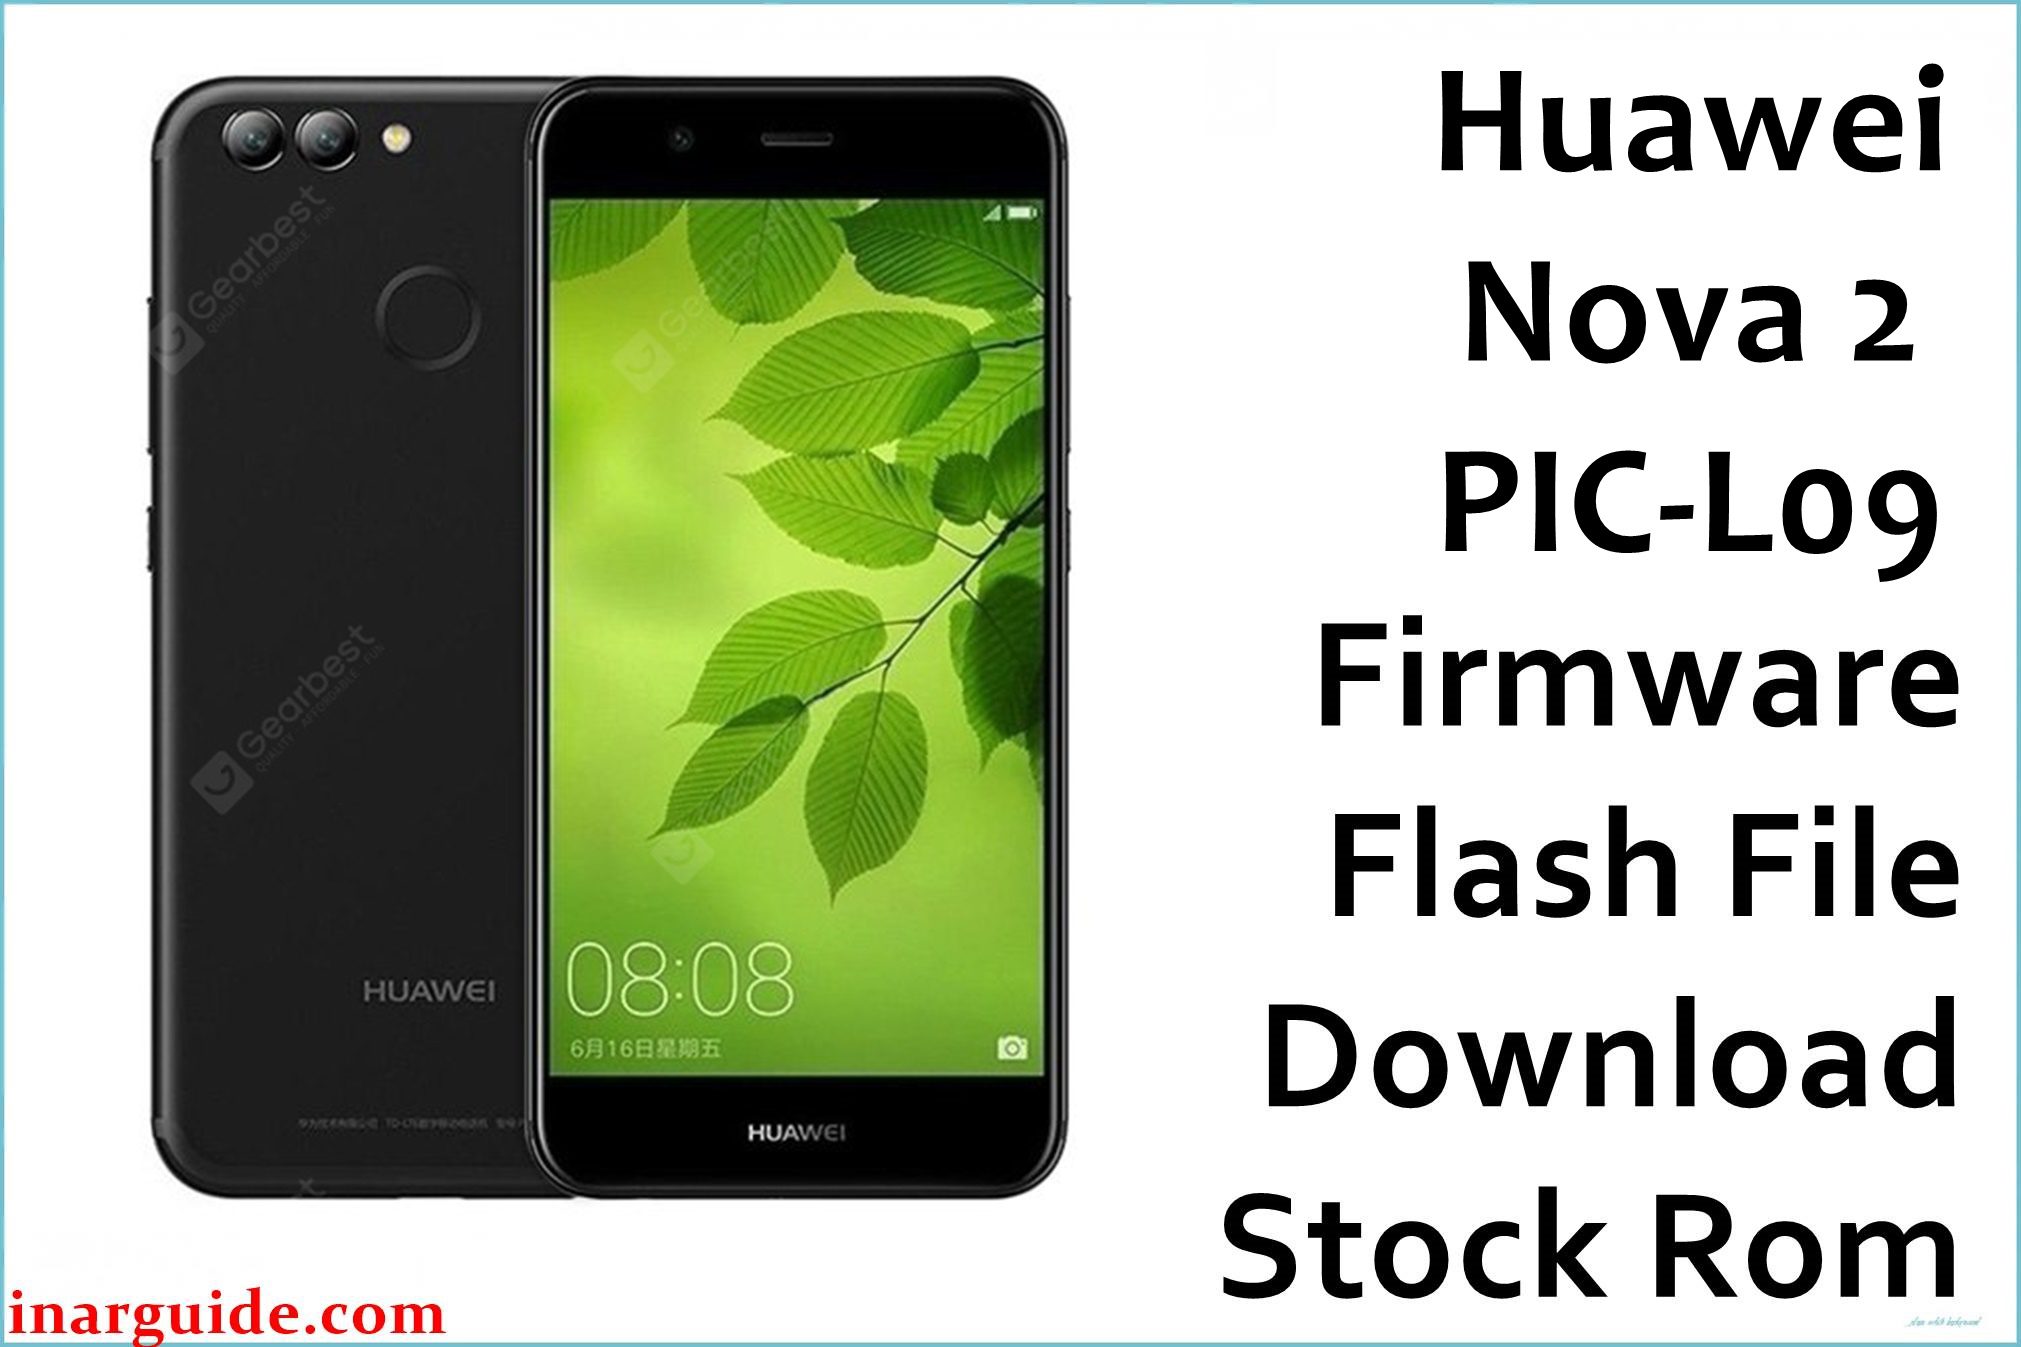 Huawei Nova 2 PIC L09